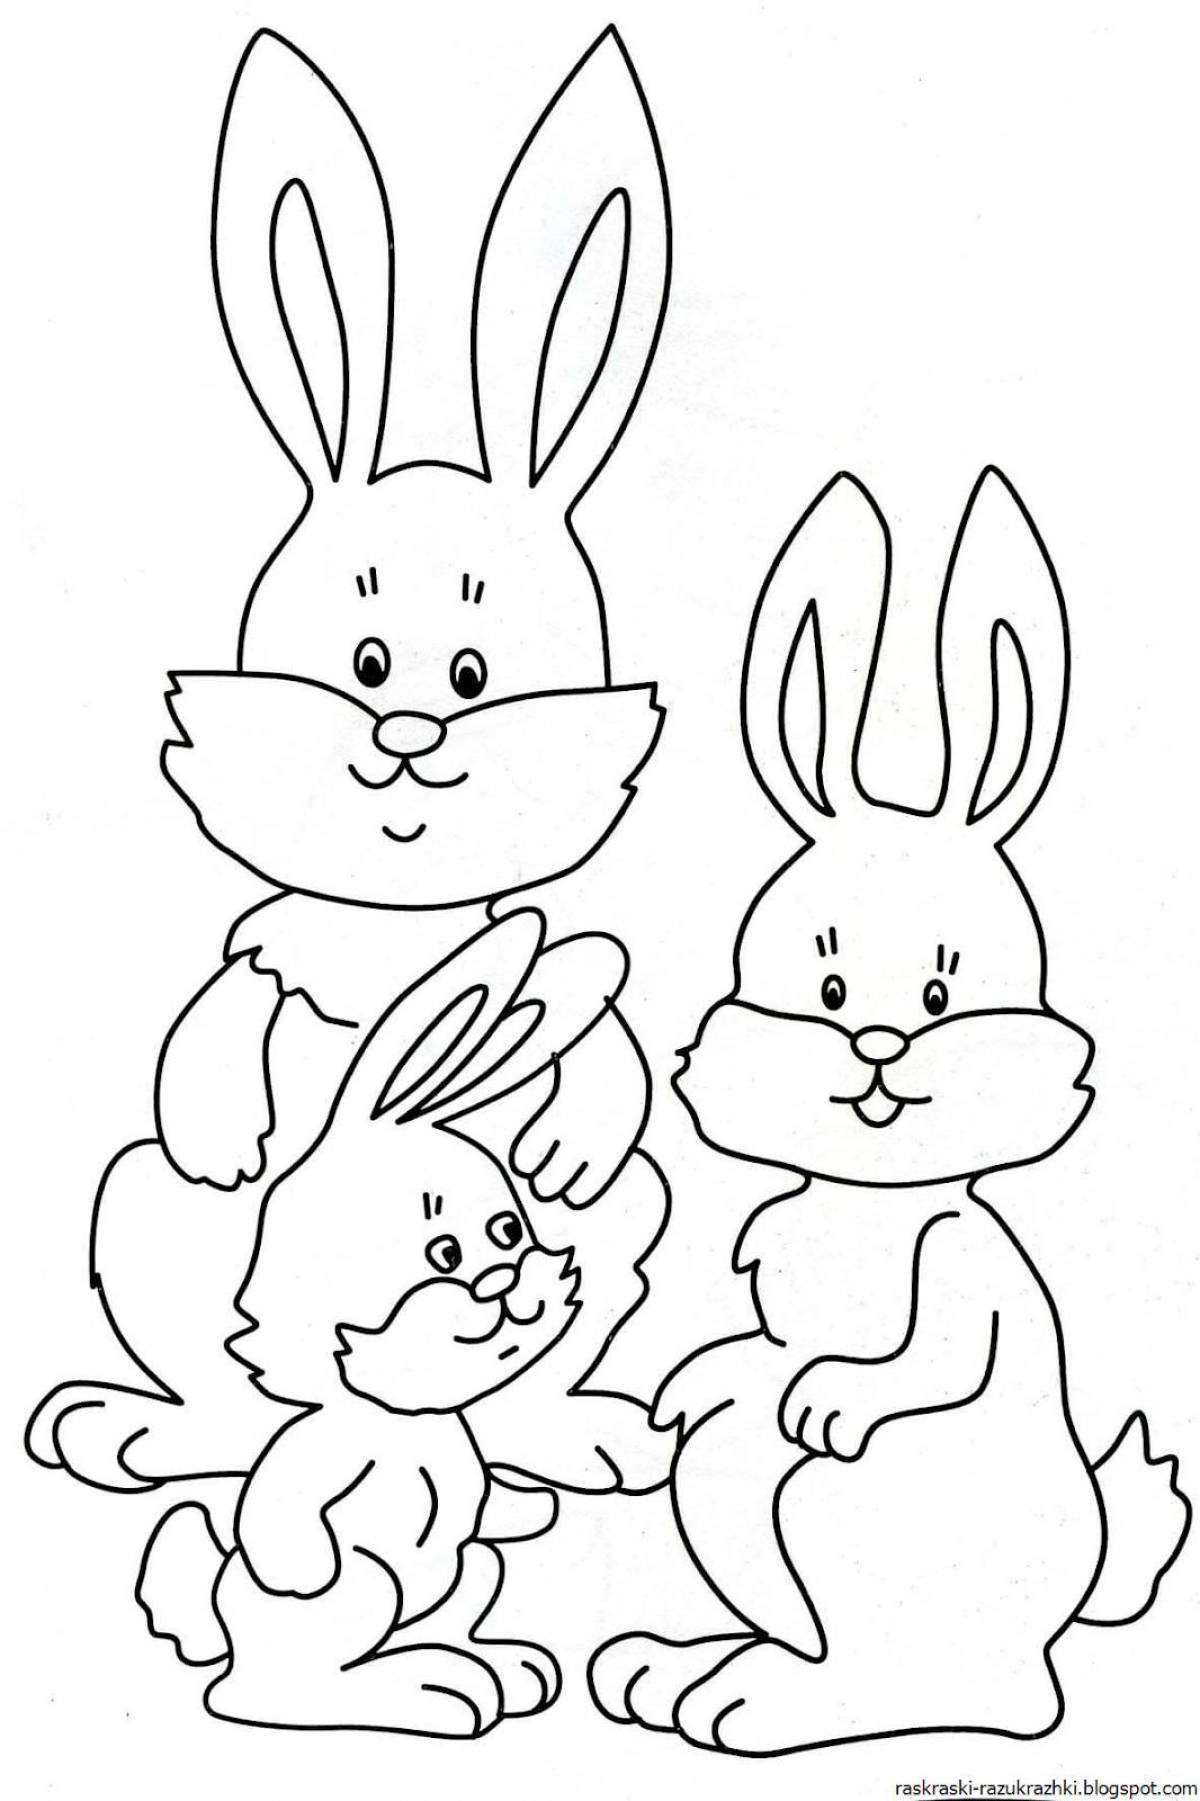 Яркая раскраска кролик для детей